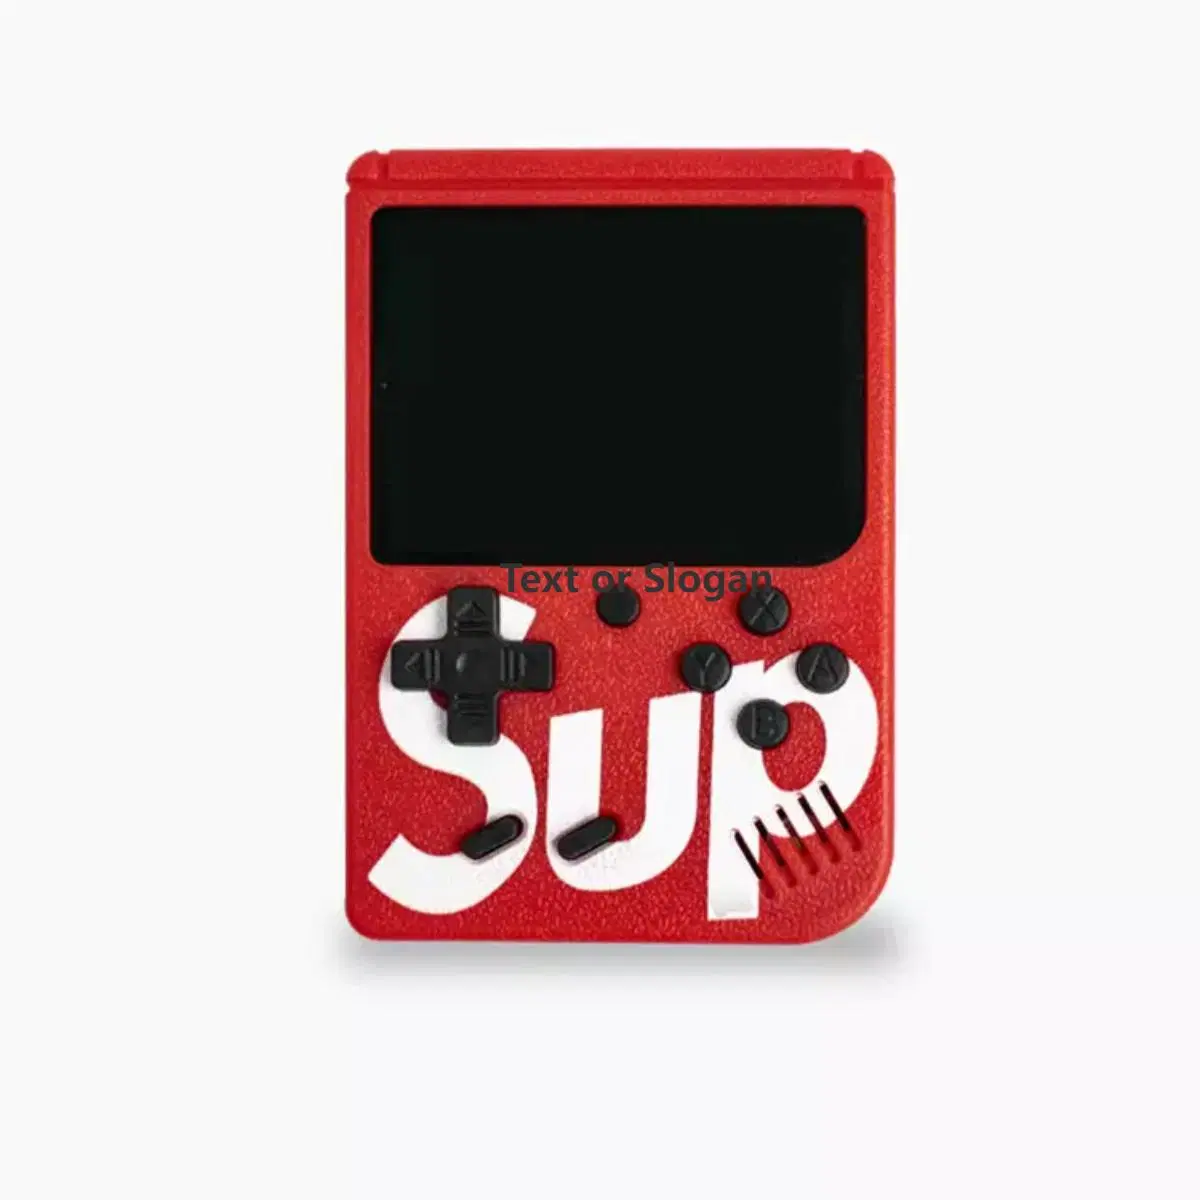 Sup Console de jeu portable vidéo à joueur unique